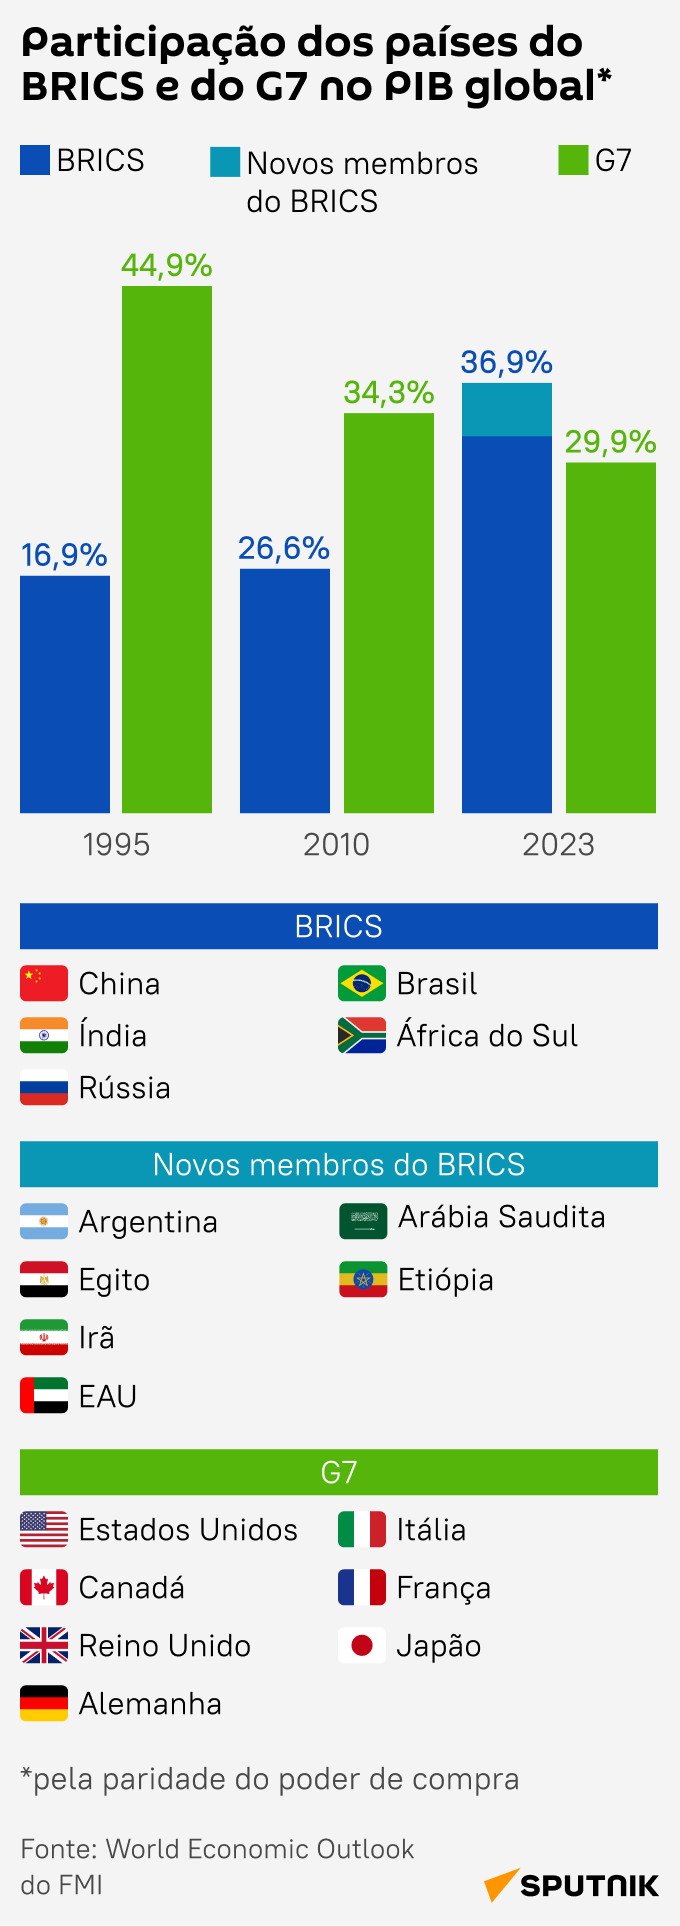 Compare a participação do BRICS no PIB global após ingresso de novos membros com a do G7 - Sputnik Brasil